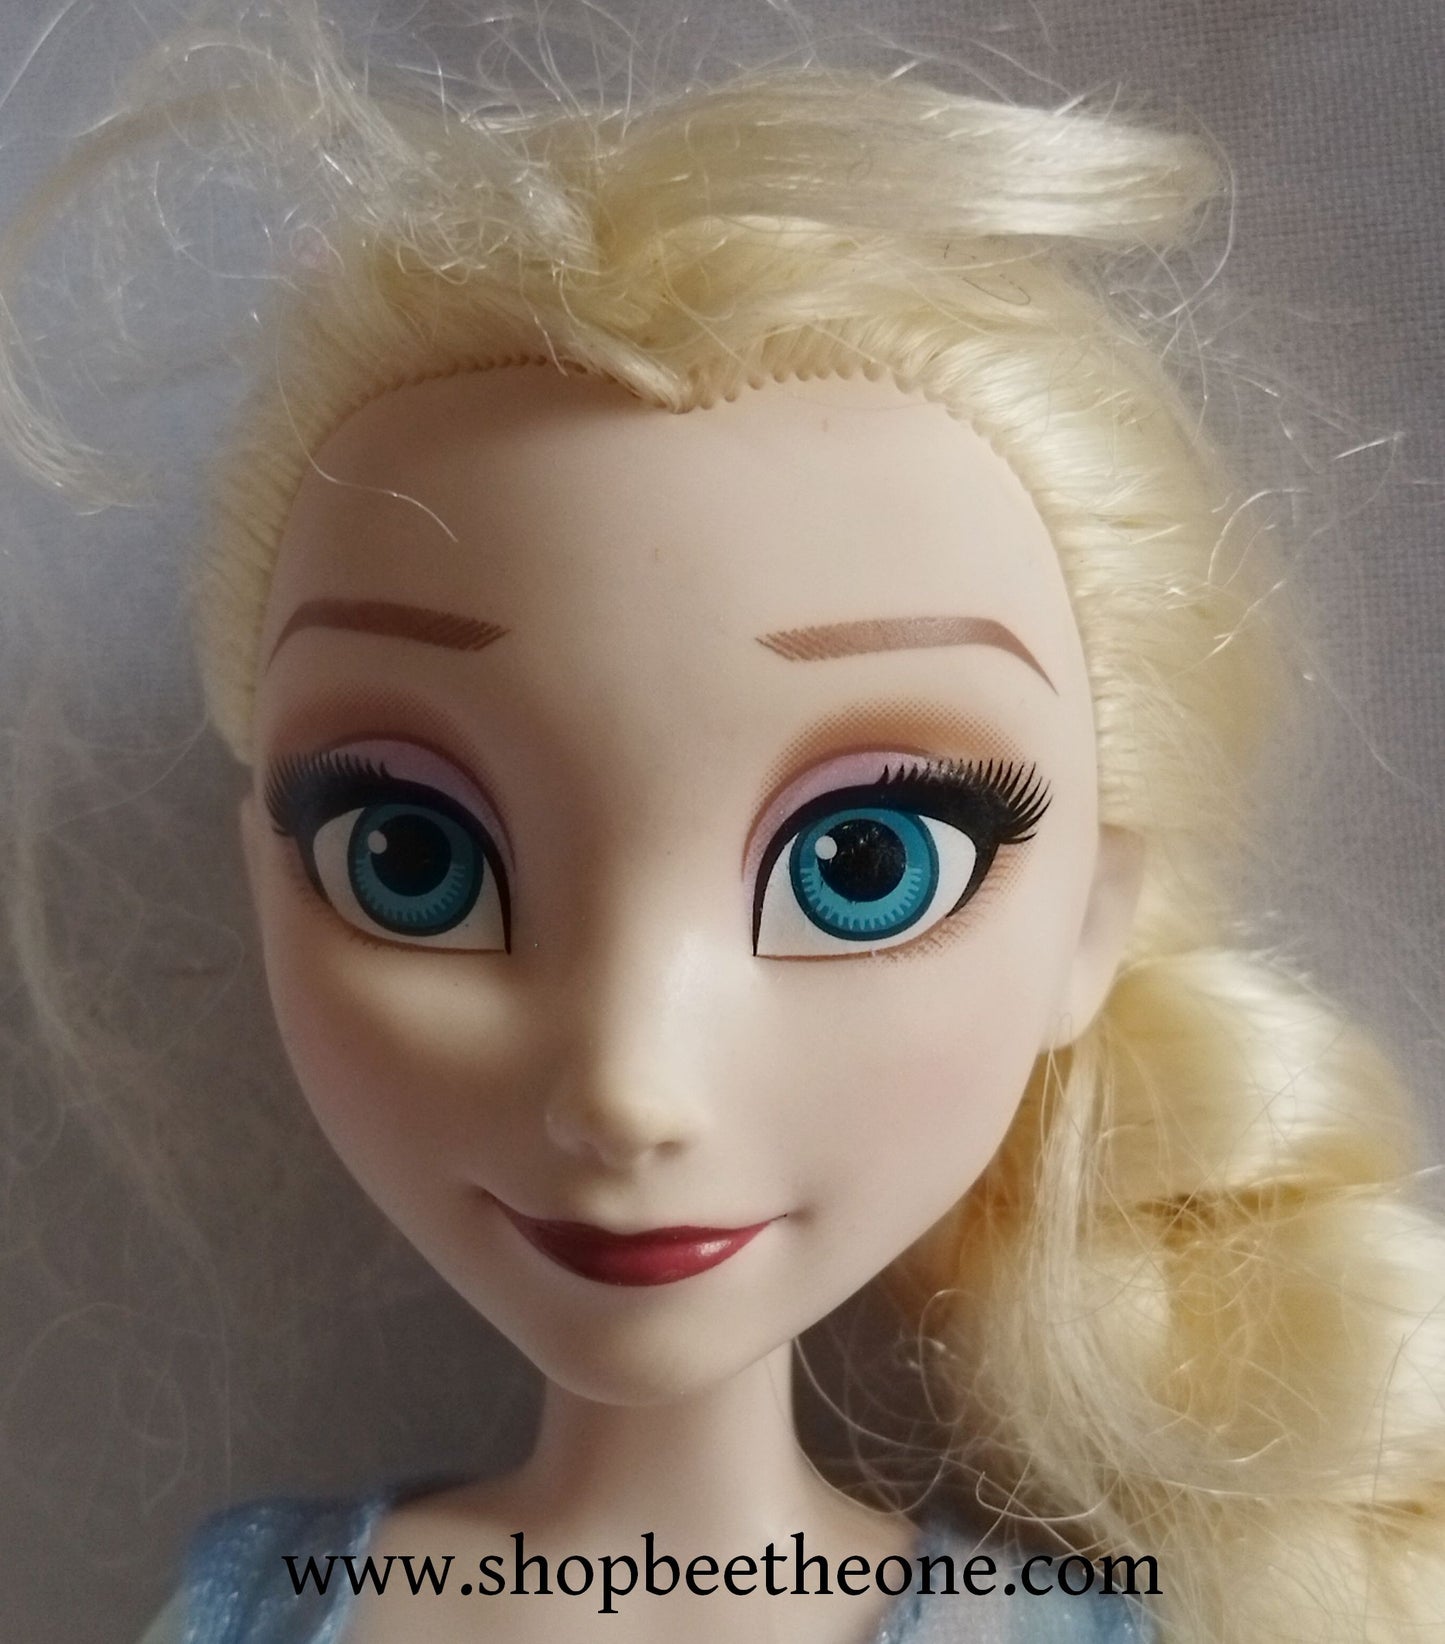 La Reine des Neiges Elsa Musical Lights - Hasbro 2016 - Poupée musicale et lumineuse - Chaussures